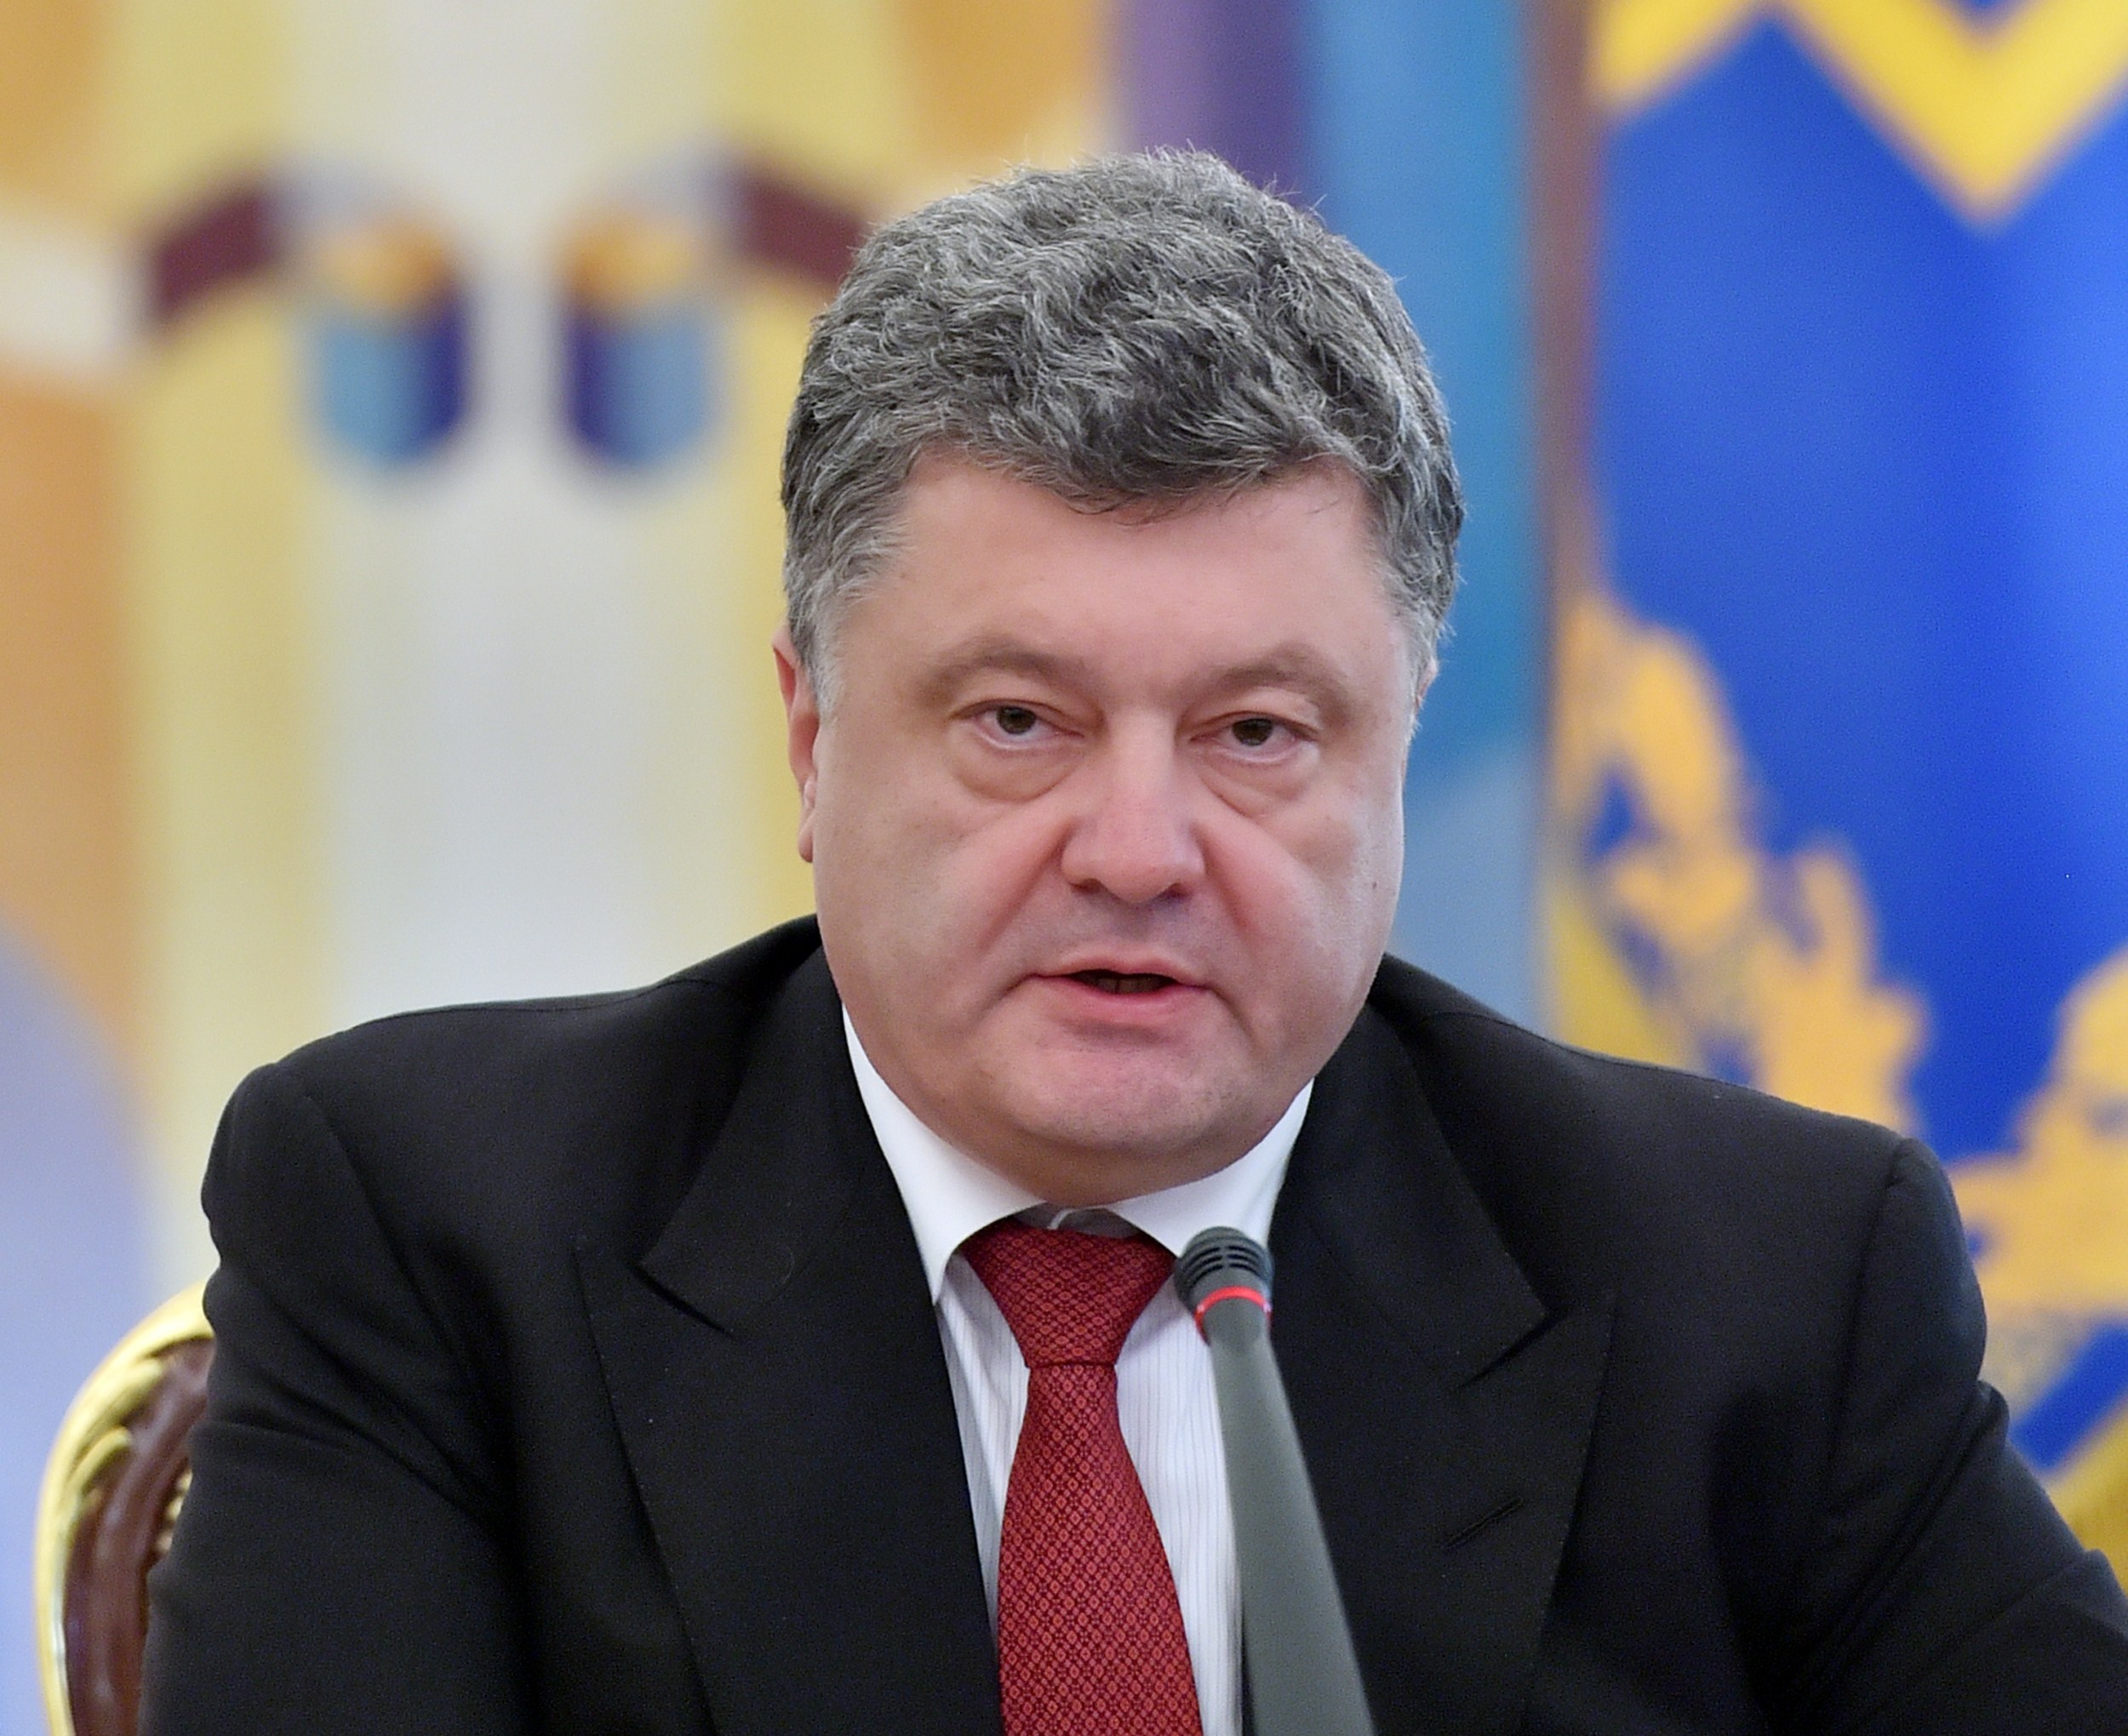 Ukrainischer Präsident Poroschenko bleibt kurz vor Wahl zuversichtlich